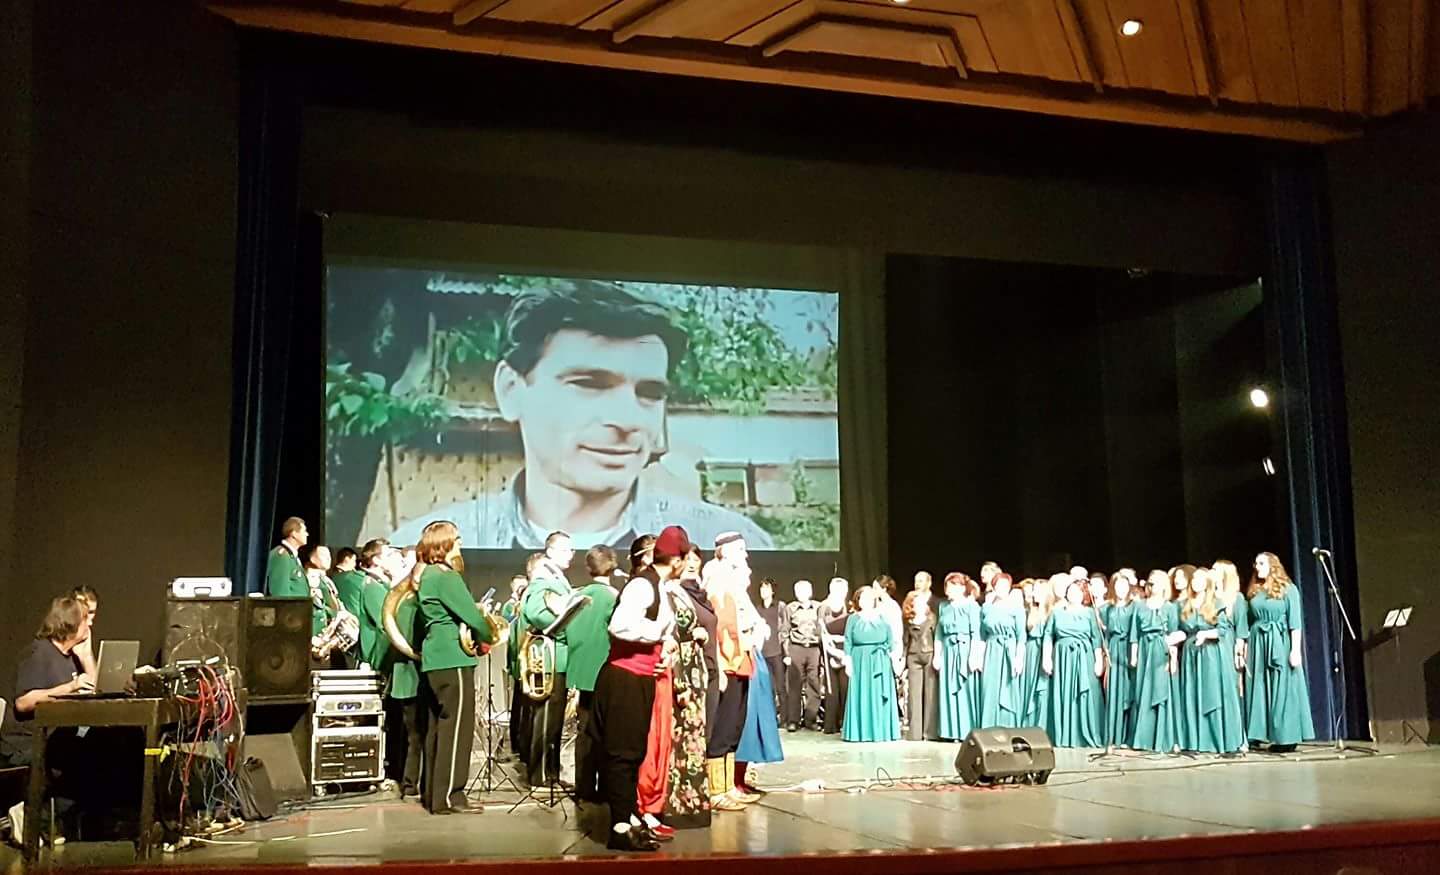 Vrhunski kakanjski proizvod “Bilo jednom na Balkanu” predstavljen publici u Bosanskom narodnom pozorištu Zenica